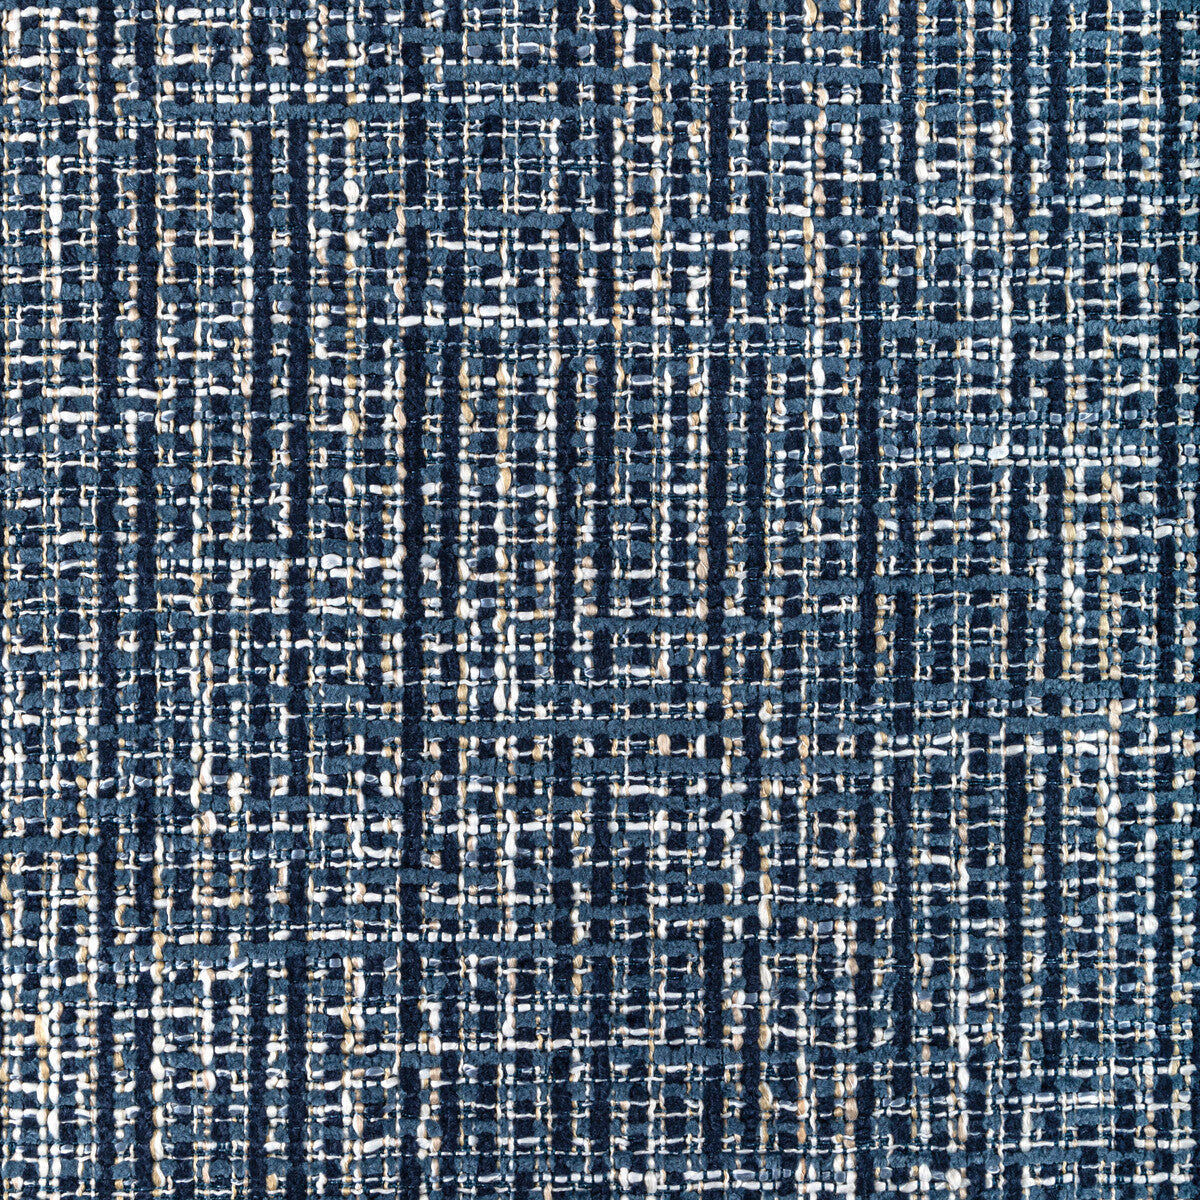 Kravet Basics fabric in 36591-5 color - pattern 36591.5.0 - by Kravet Basics in the Performance Kravetarmor collection